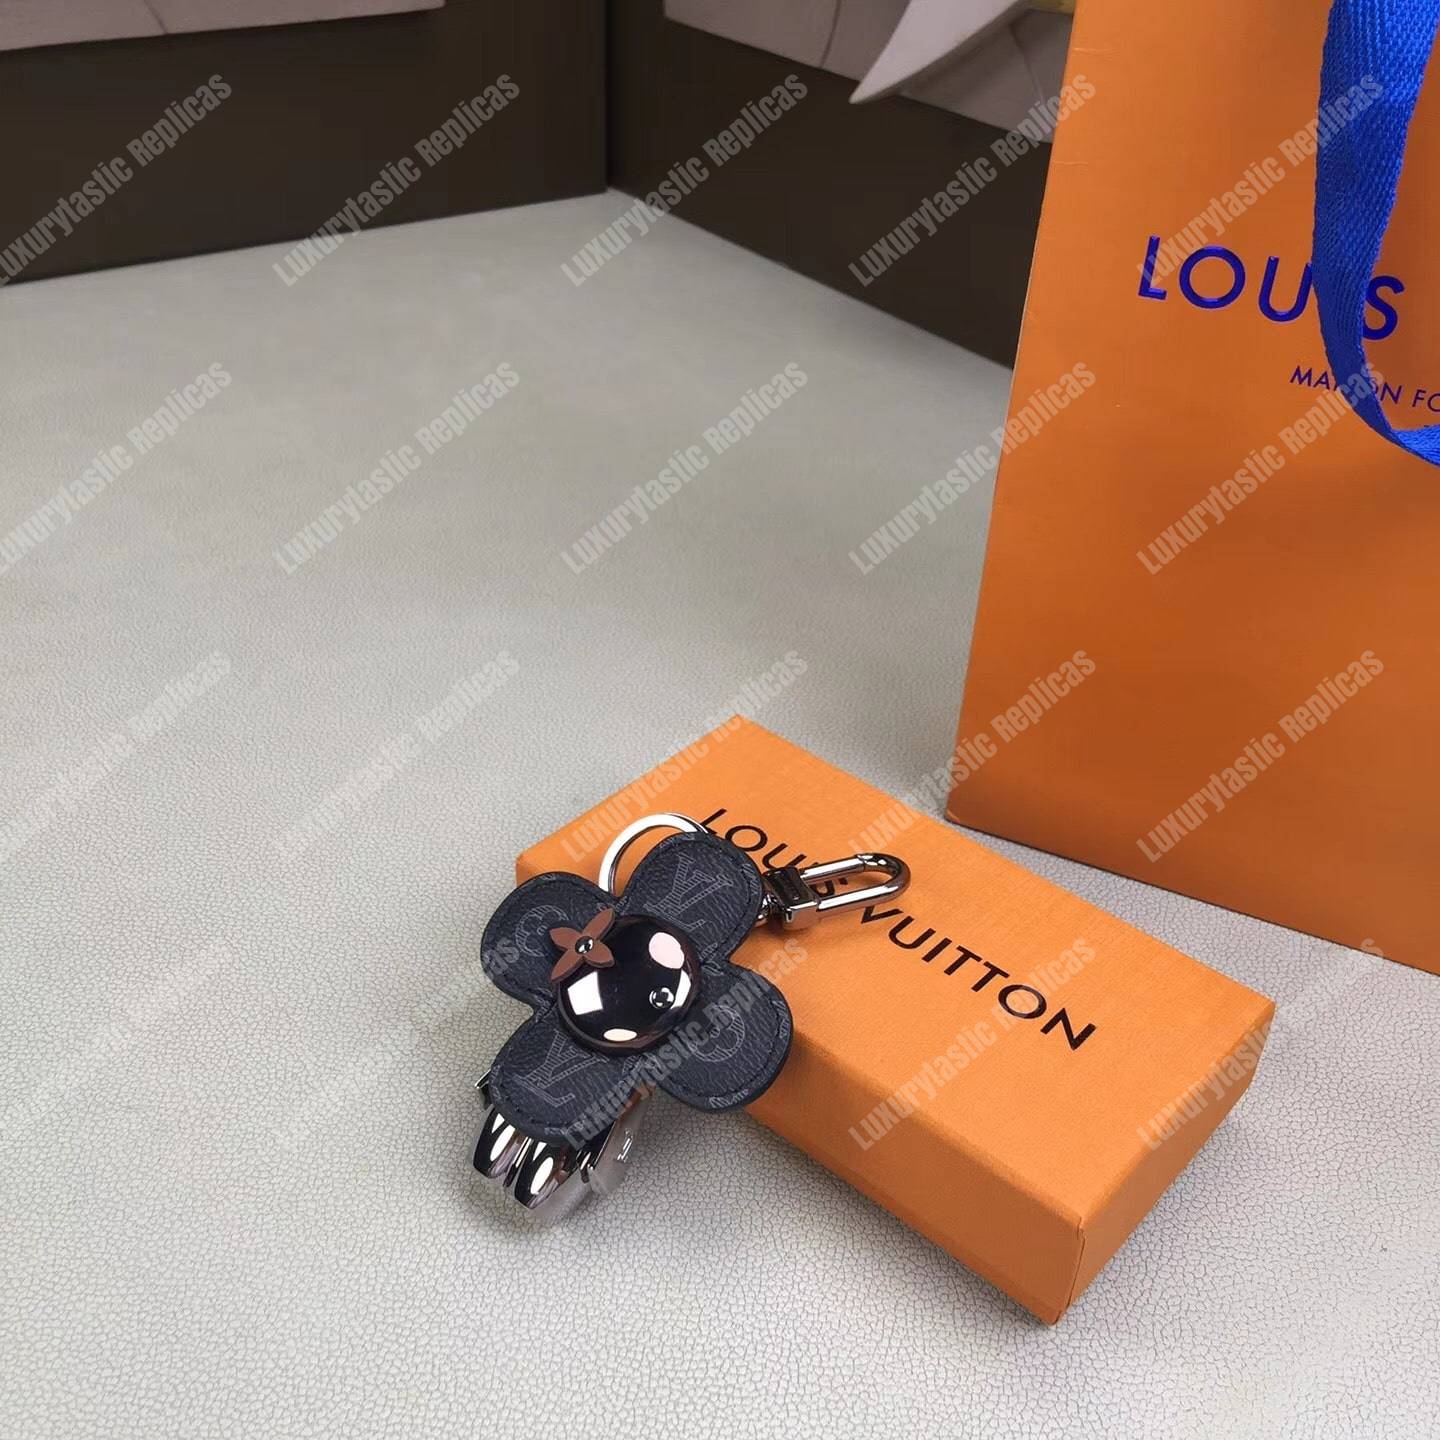 Louis Vuitton Sporty Car Vivienne Bag Charm & Key Holder - Black Keychains,  Accessories - LOU782801